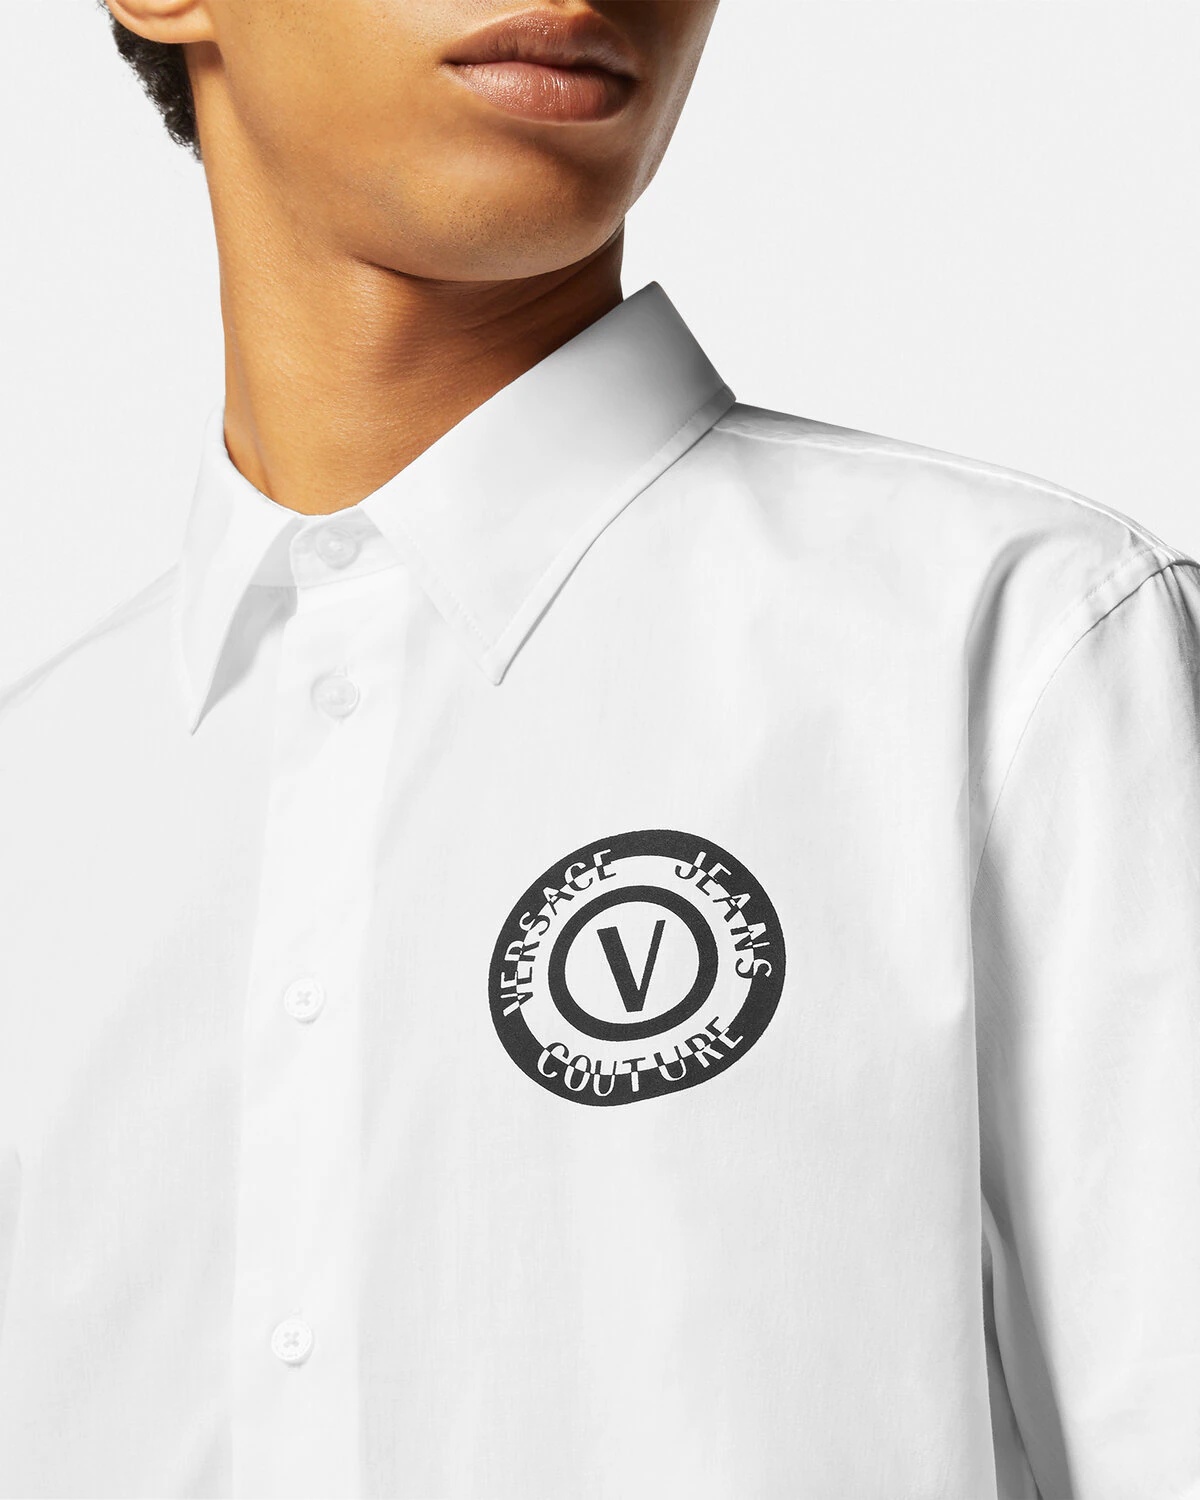 V-Emblem Shirt - 3